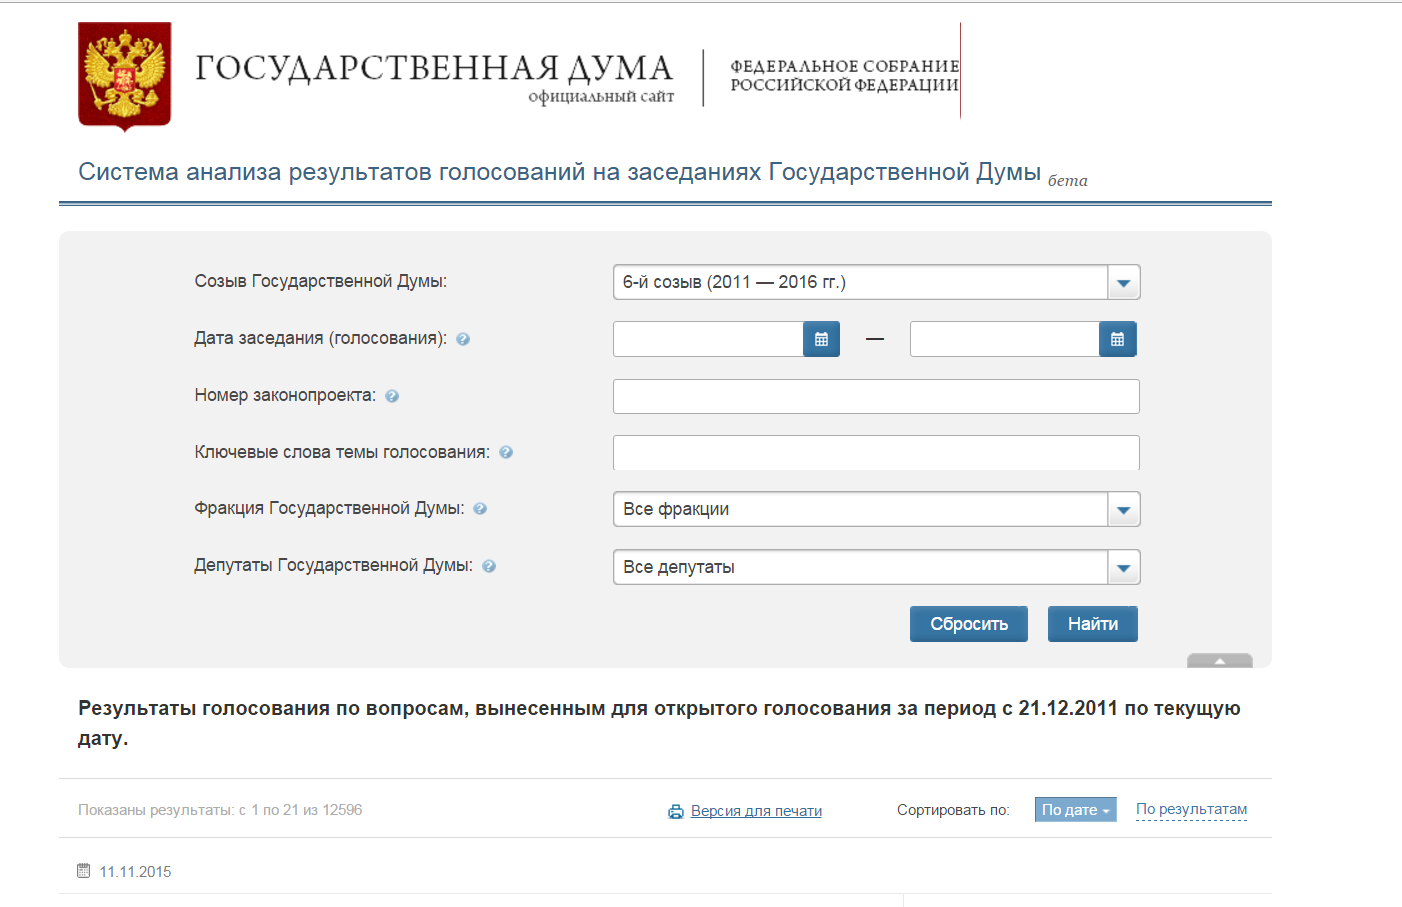 Сайт дума гов ру. Регистрационный номер законопроекта от Госдумы. Http://vote.Duma.gov.ru/vote/117112.